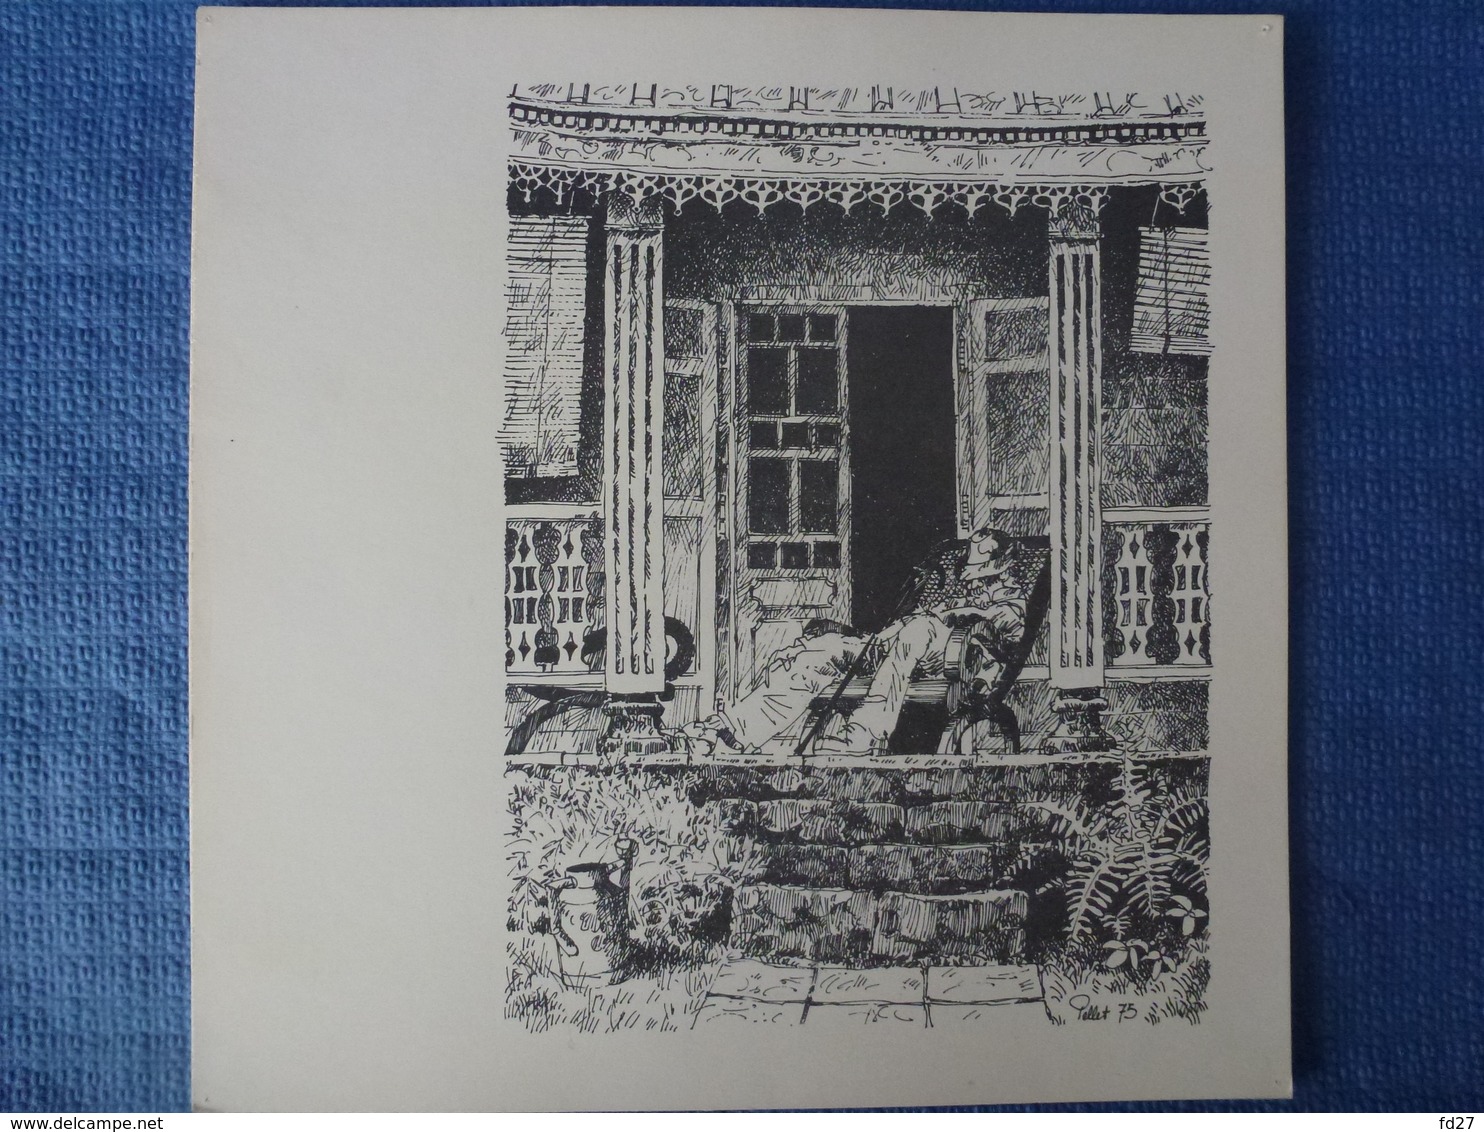 Lot de 7 lithographies créoles de maisons réunionnaises - signées Pellet - 1975